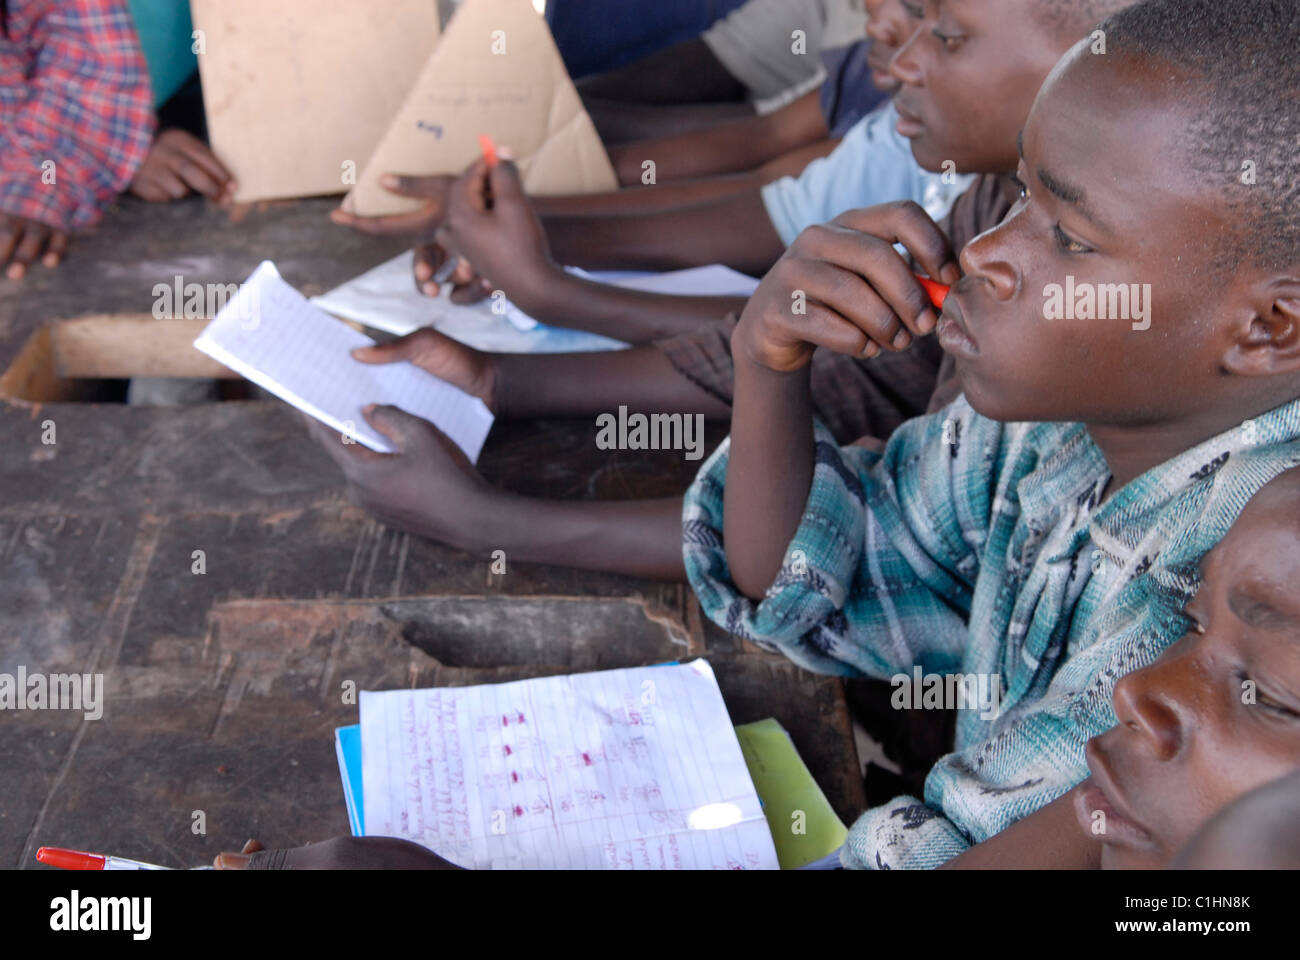 Ehemalige Kindersoldaten lernen Französisch lesen und schreiben im Zentrum für Transit und Orientierung für ehemalige Kindersoldaten, das von CAJED betrieben wird, einer kongolesischen NGO, die von UNICEF unterstützt wird und mit benachteiligten Kindern und Jugendlichen in der Stadt Goma arbeitet. Kongo, DR Afrika Stockfoto